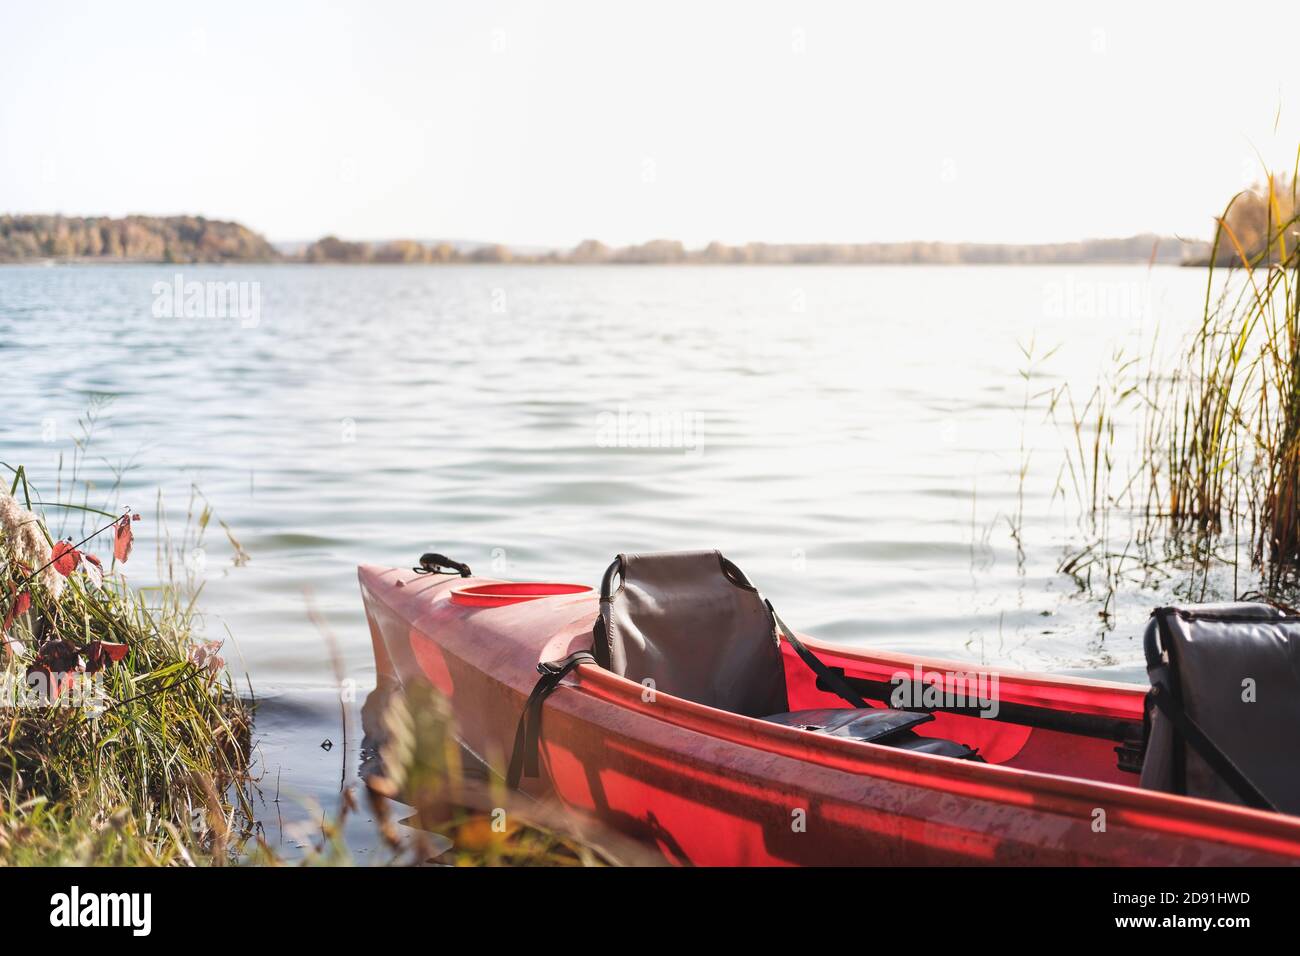 Barca in canoa sull'acqua, grande lago. Imbarcazione in plastica rossa sull'acqua, riposo attivo, vacanza in barca Foto Stock